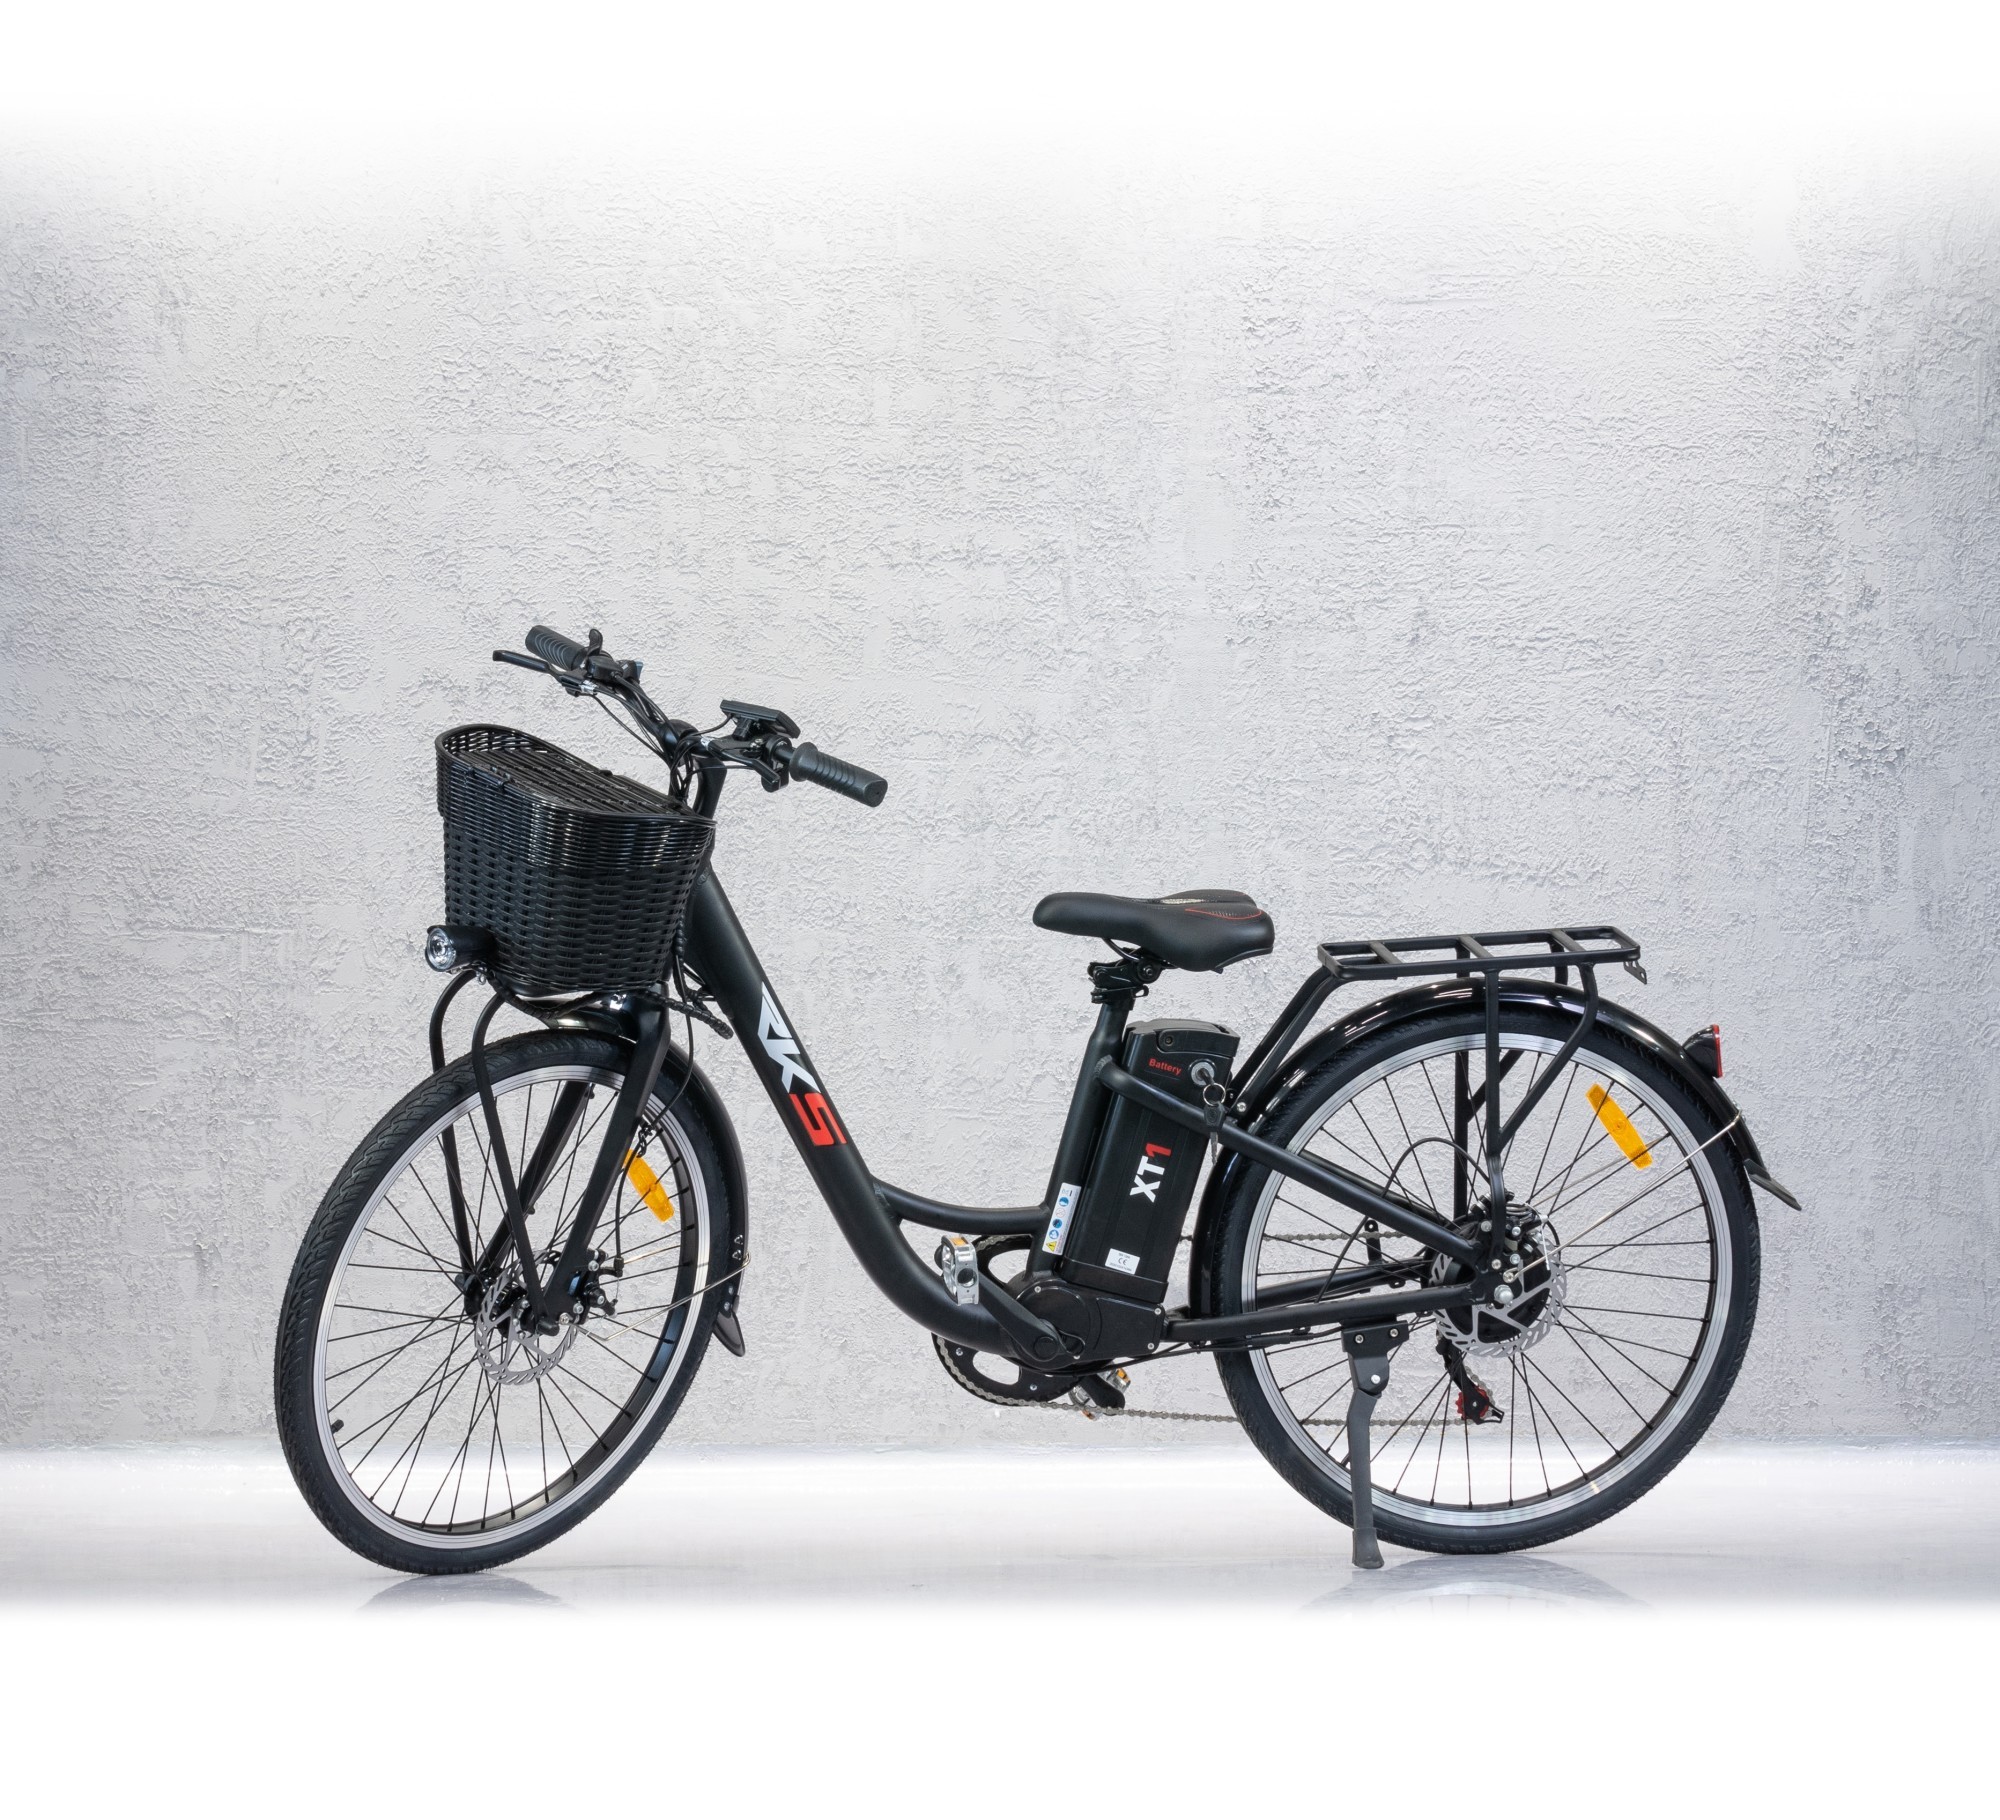 Cumpara Transport Gratuit- Bicicleta electrica RKS 250W, Li-Ion 36V 10.4Ah, 50km, aluminiu, negru , la RKS la pretul de 3.499,00 RON doar pe MagazinIeftin.ro.